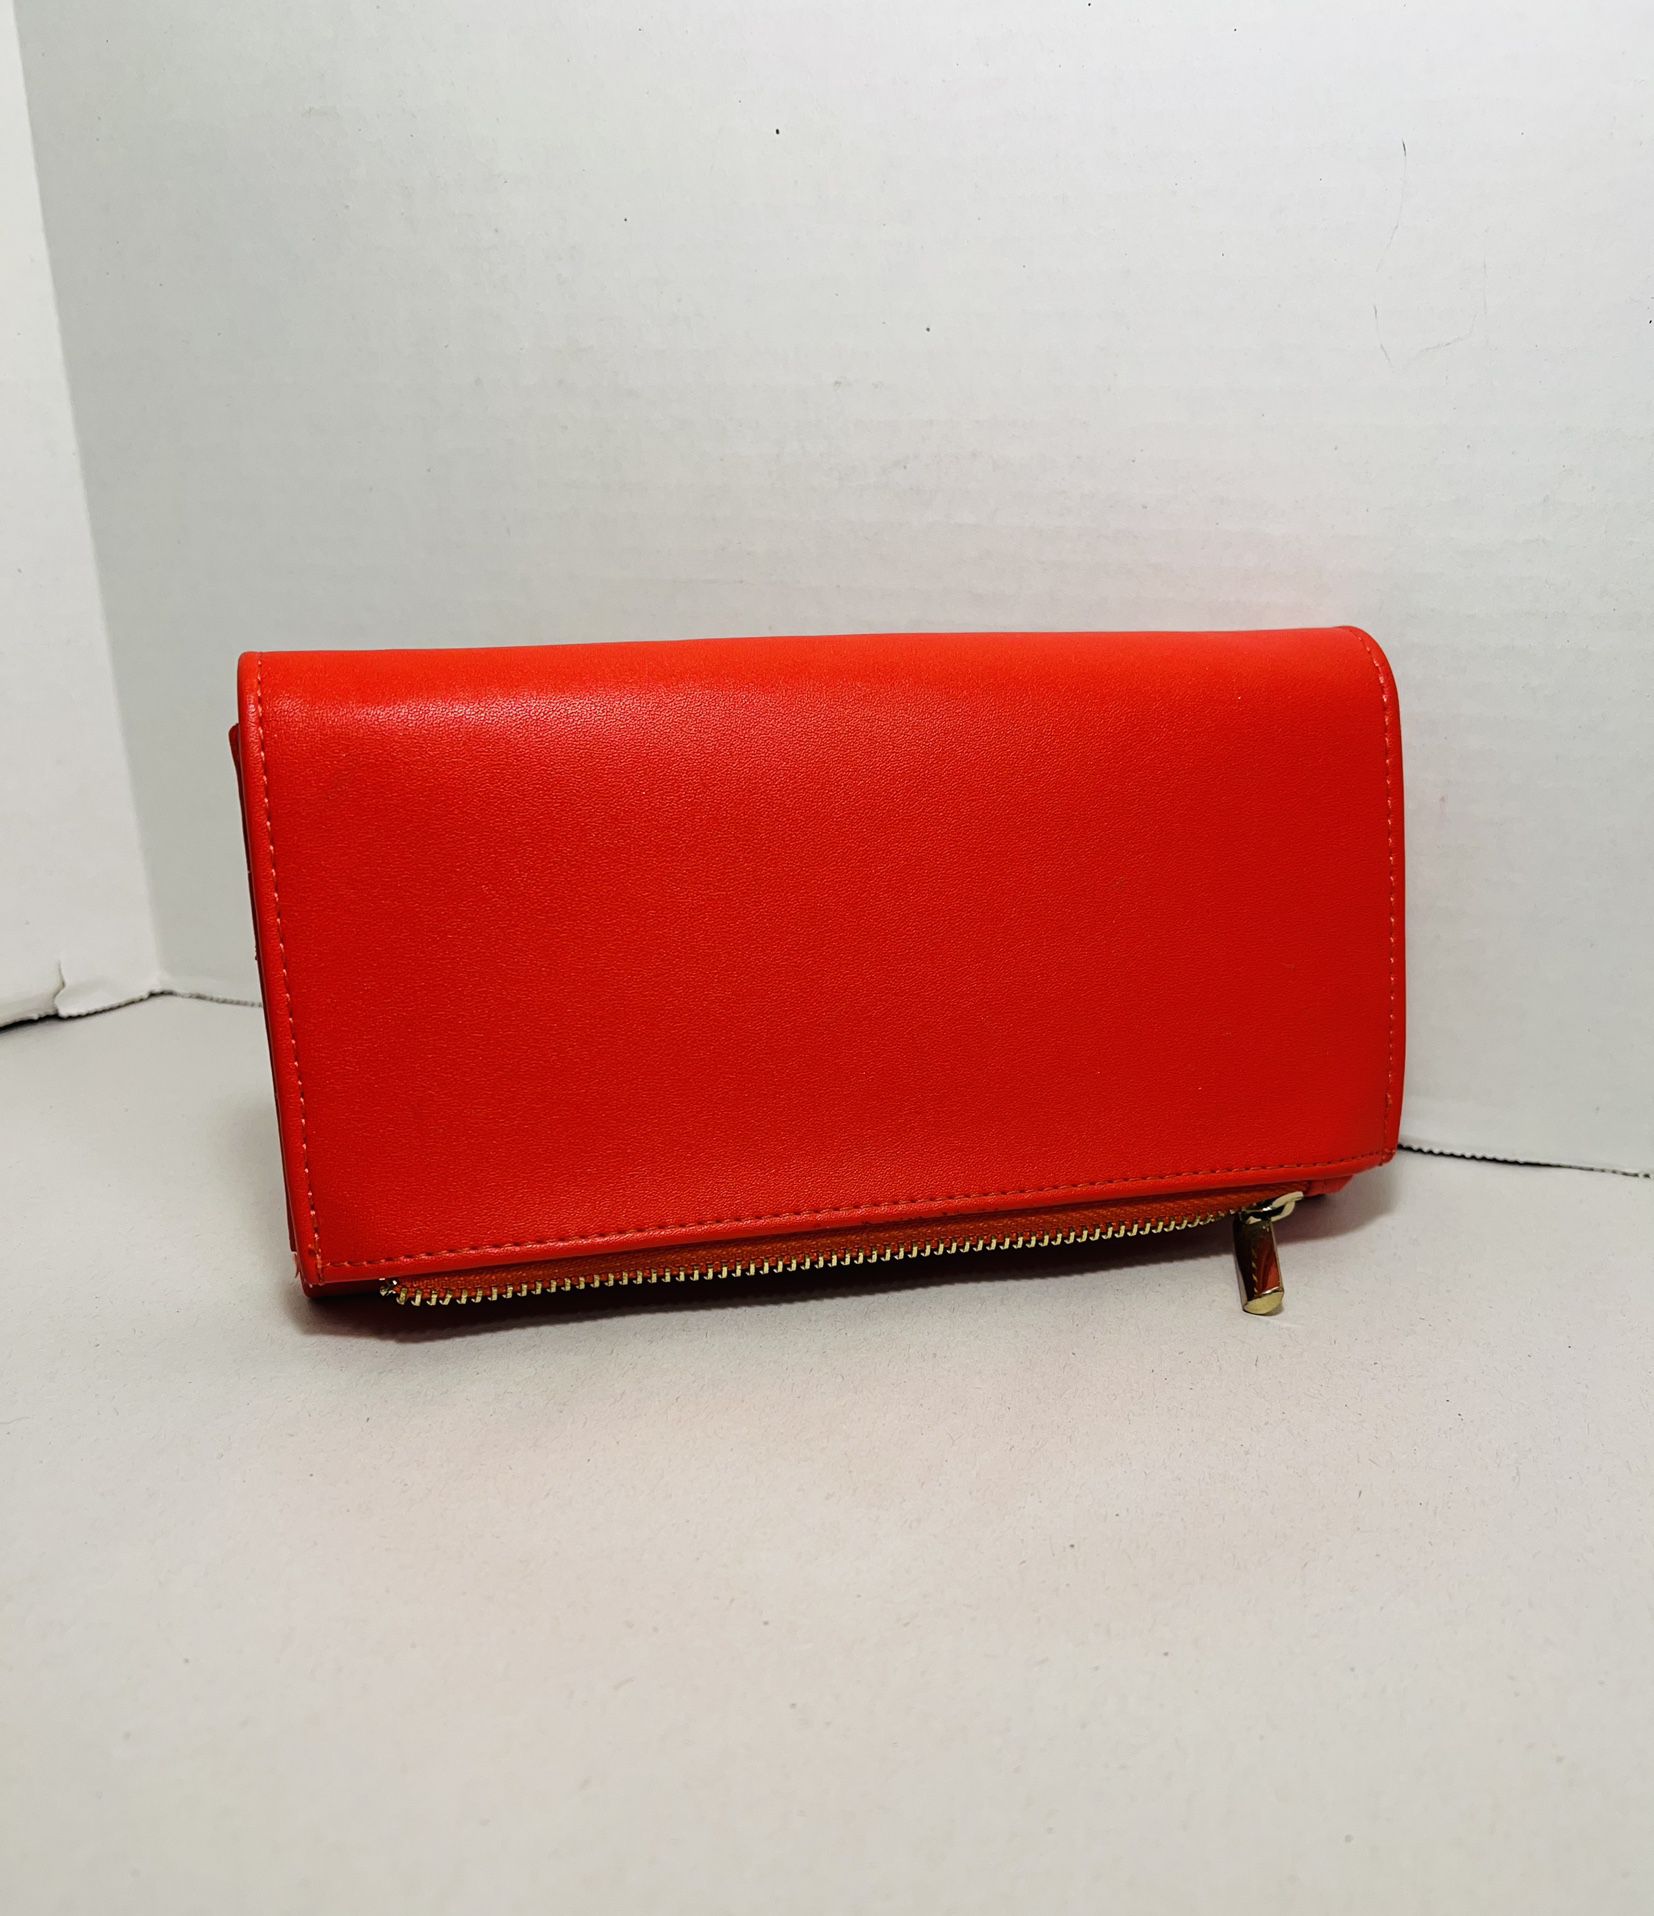 A New Day reddish/ fuchsia beautiful wallet/ clutch